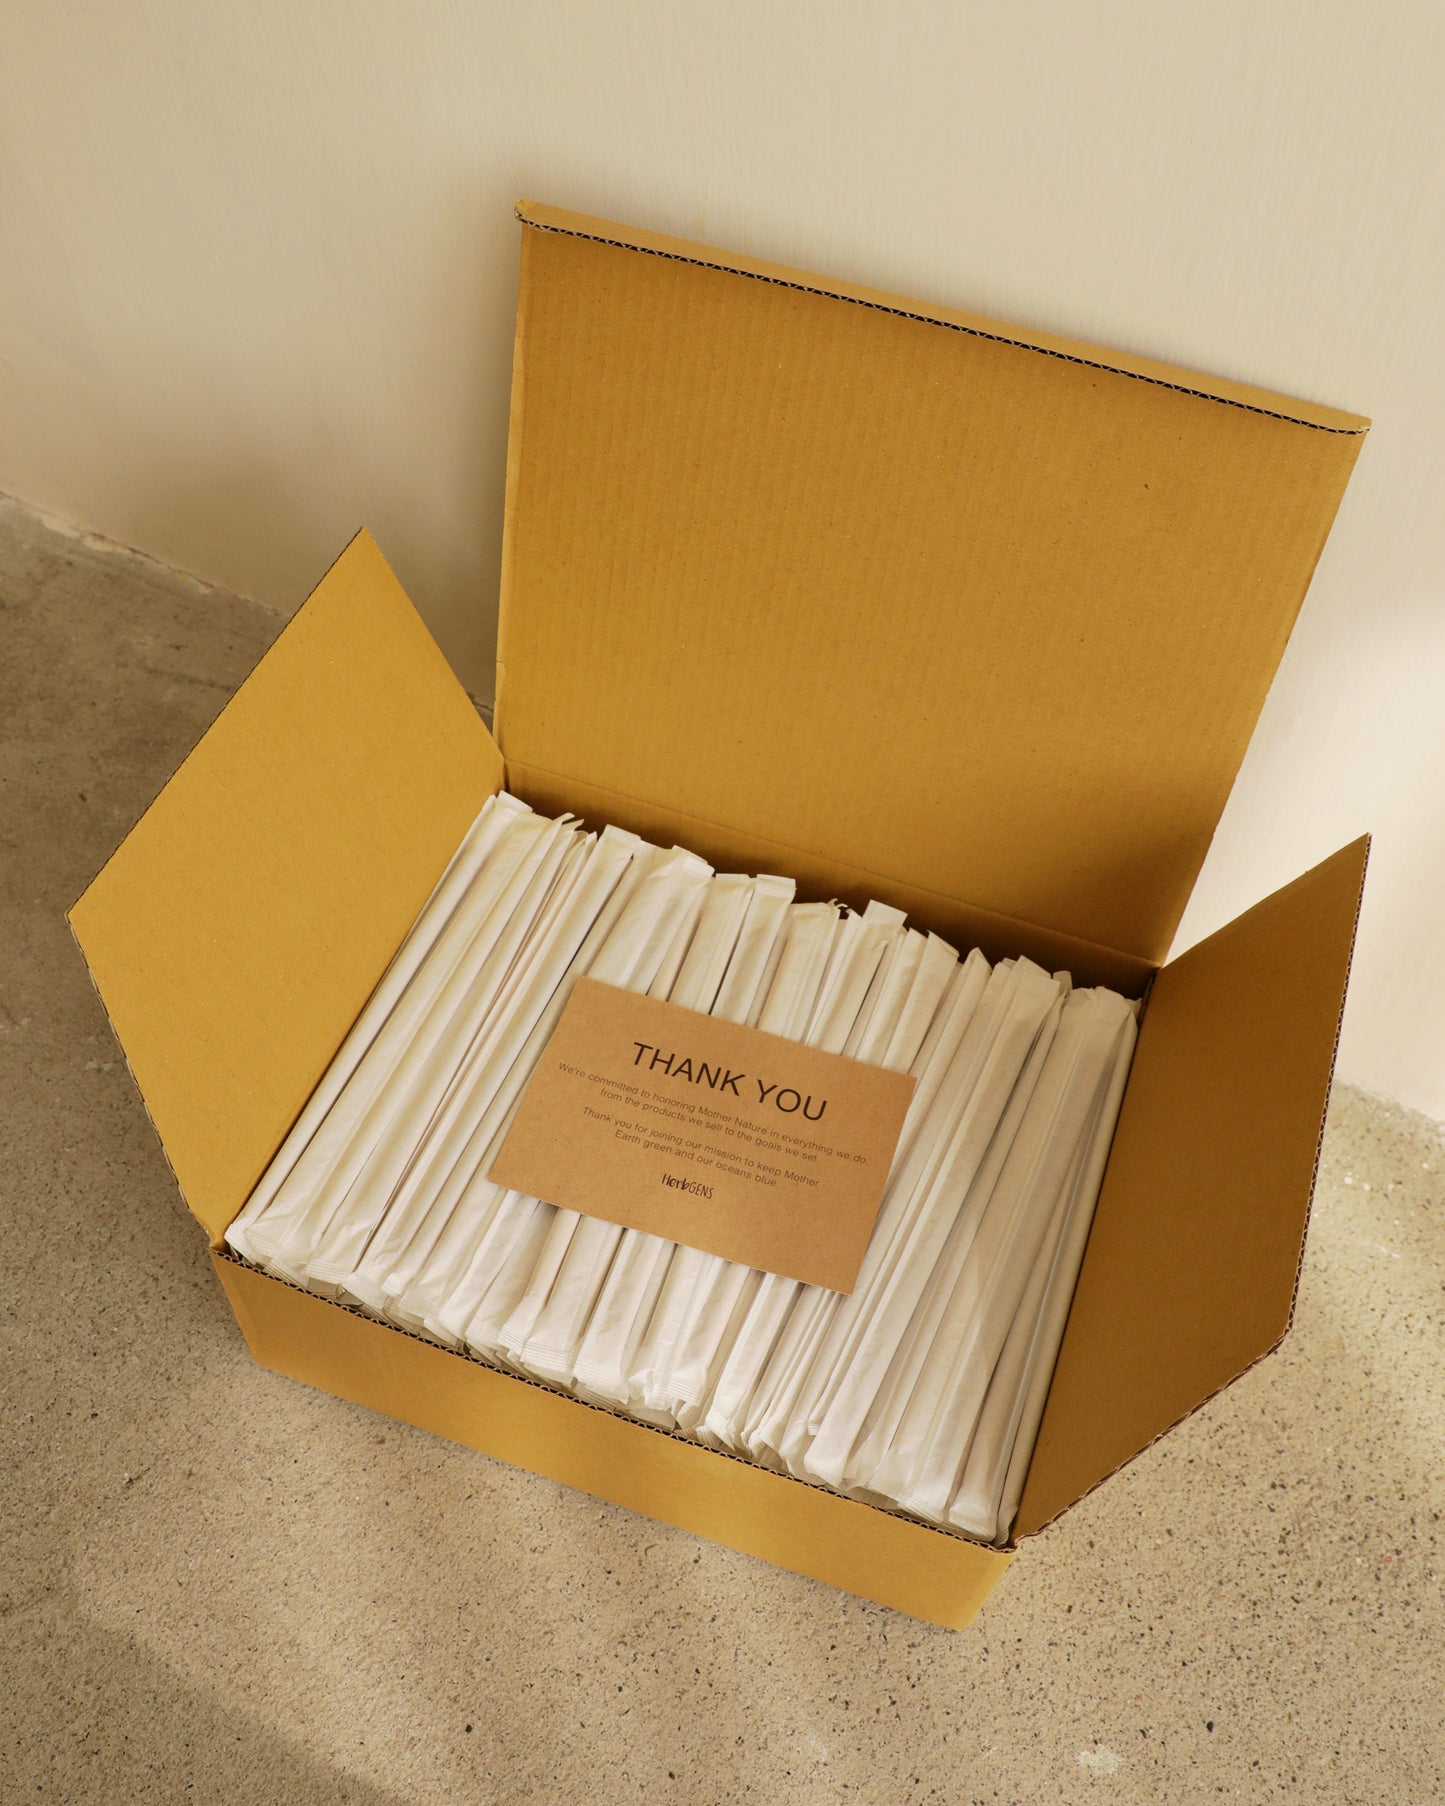 兩盒一組1,000支獨立包裝的草吸管         